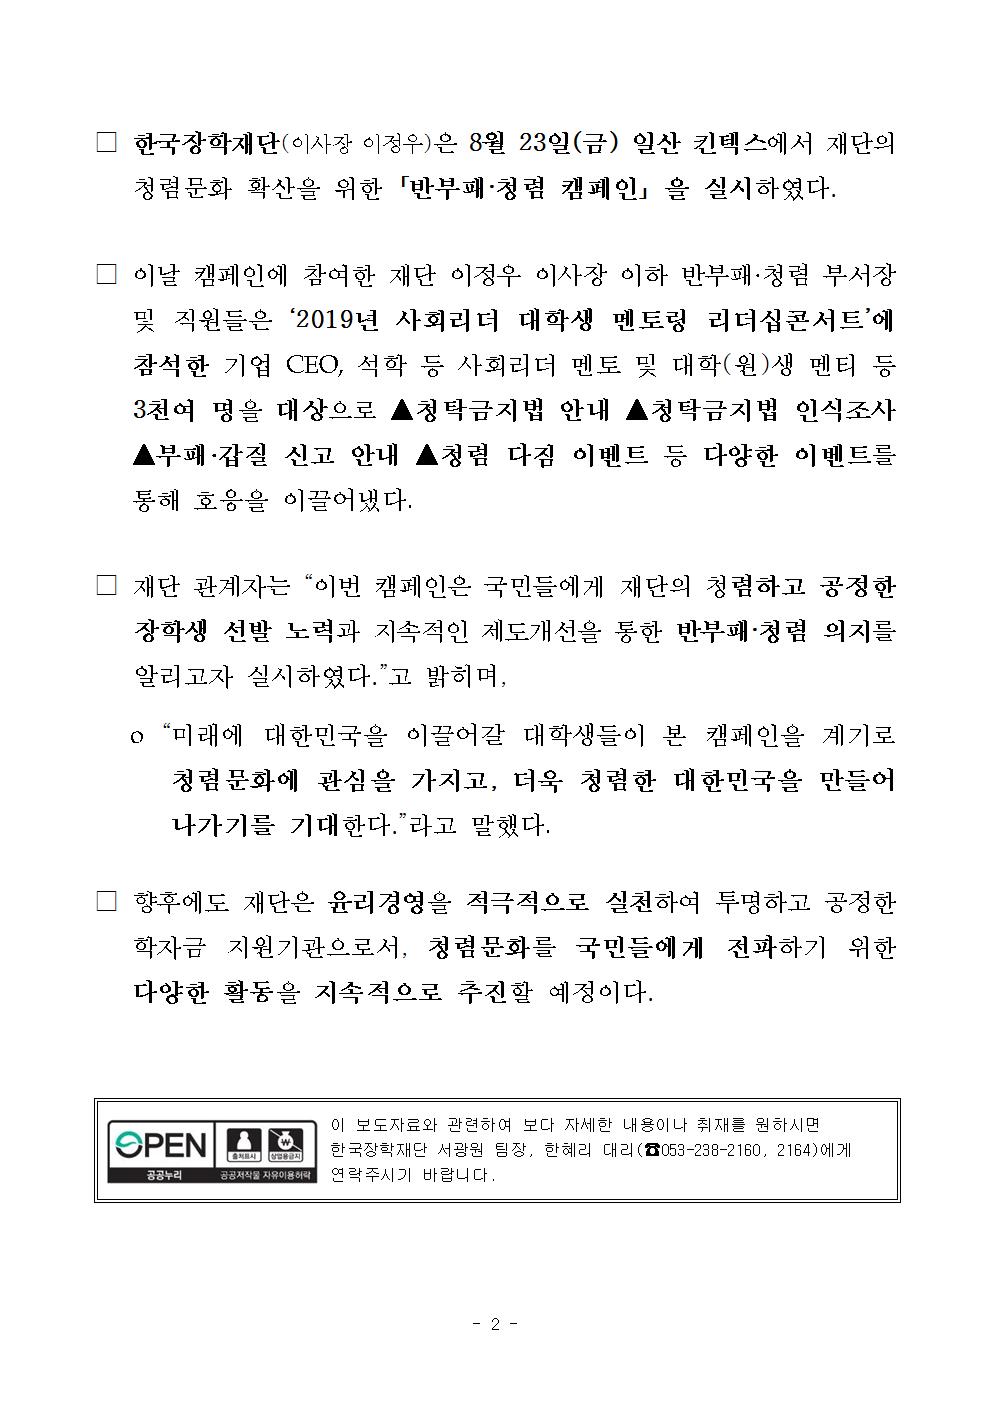 08-28(수)[보도자료] 한국장학재단, 청렴문화 확산을 위한 「반부패 청렴 캠페인」 개최002.jpg